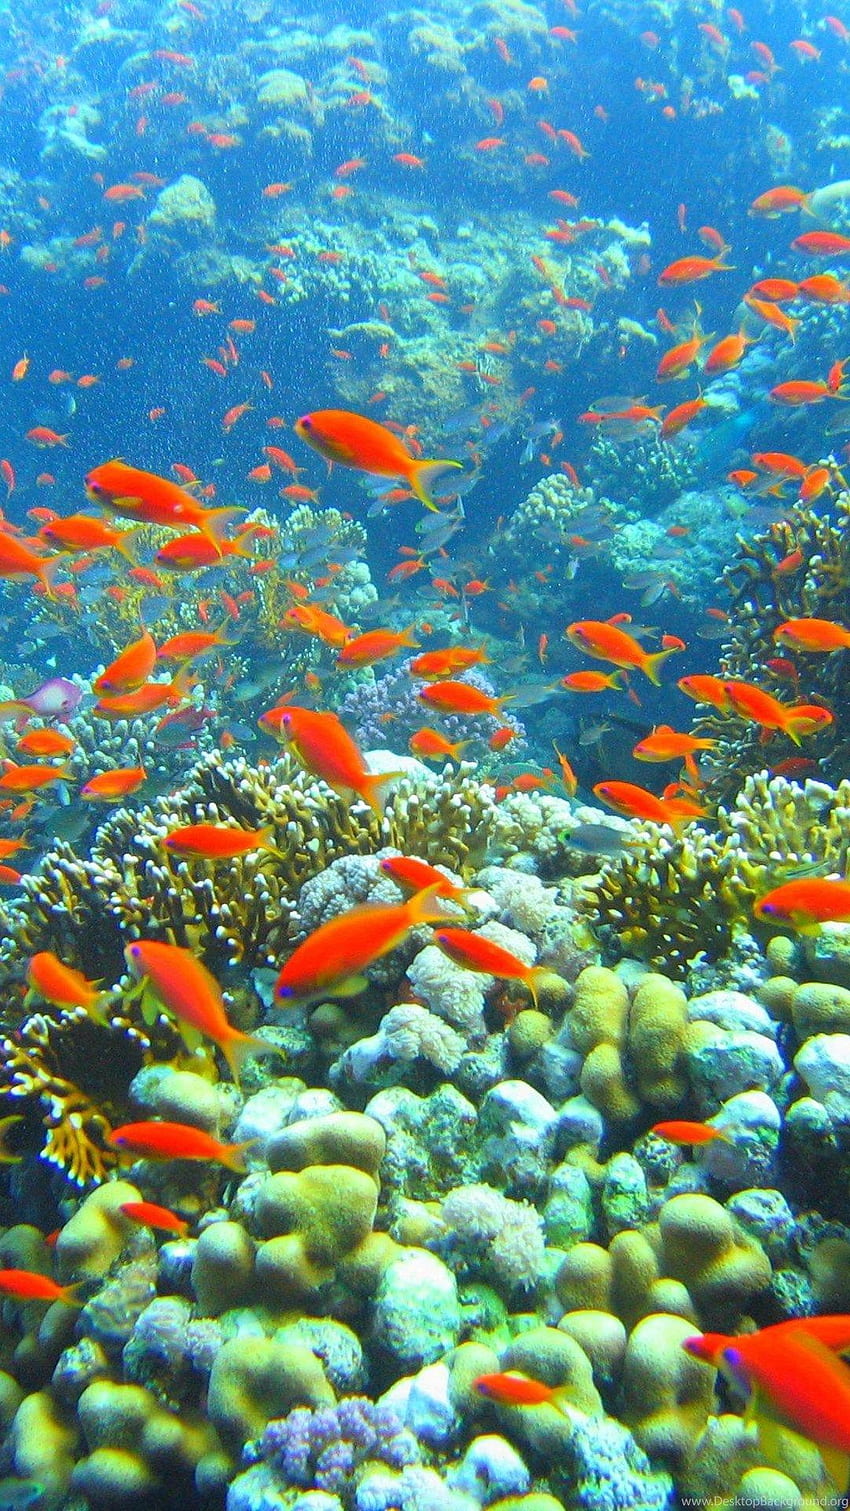 Hình nền điện thoại HD: rạn san hô, dưới nước, sinh học đại dương - Cùng đắm mình trong thế giới dưới đại dương với hình nền điện thoại HD về rạn san hô, sinh vật dưới nước và sinh học đại dương. Cảm nhận nhịp sống đầy màu sắc của những sinh vật thú vị và ngắm nhìn những bức tranh thiên nhiên đẹp tuyệt vời.